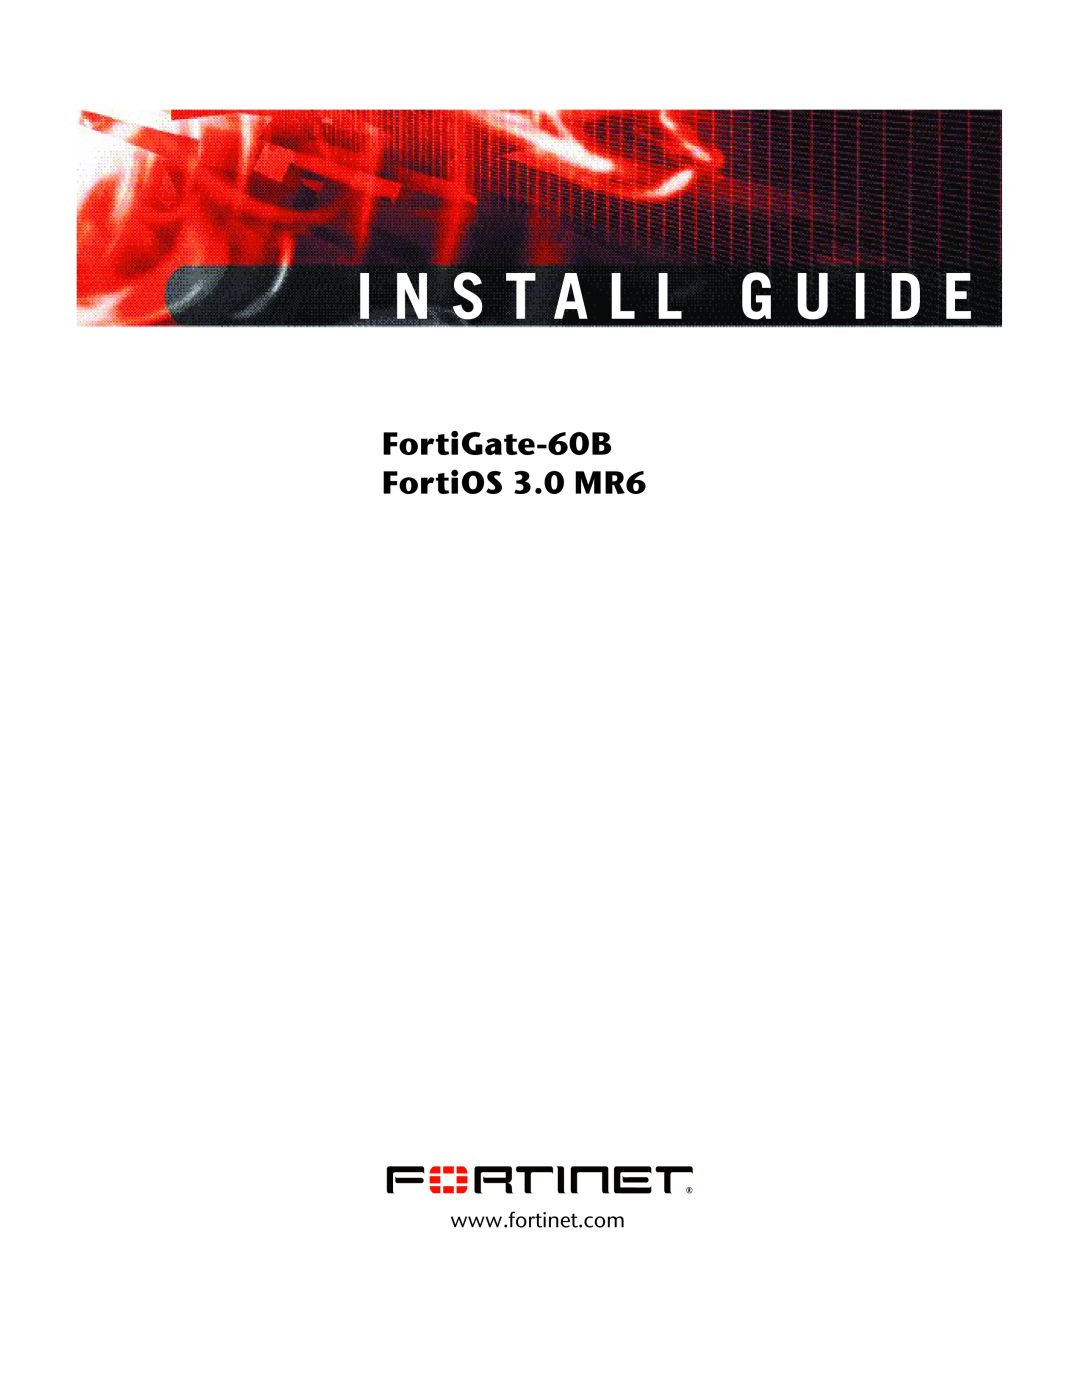 Fortinet manual I N S T A L L G U I D E, FortiGate-60B FortiOS 3.0 MR6 